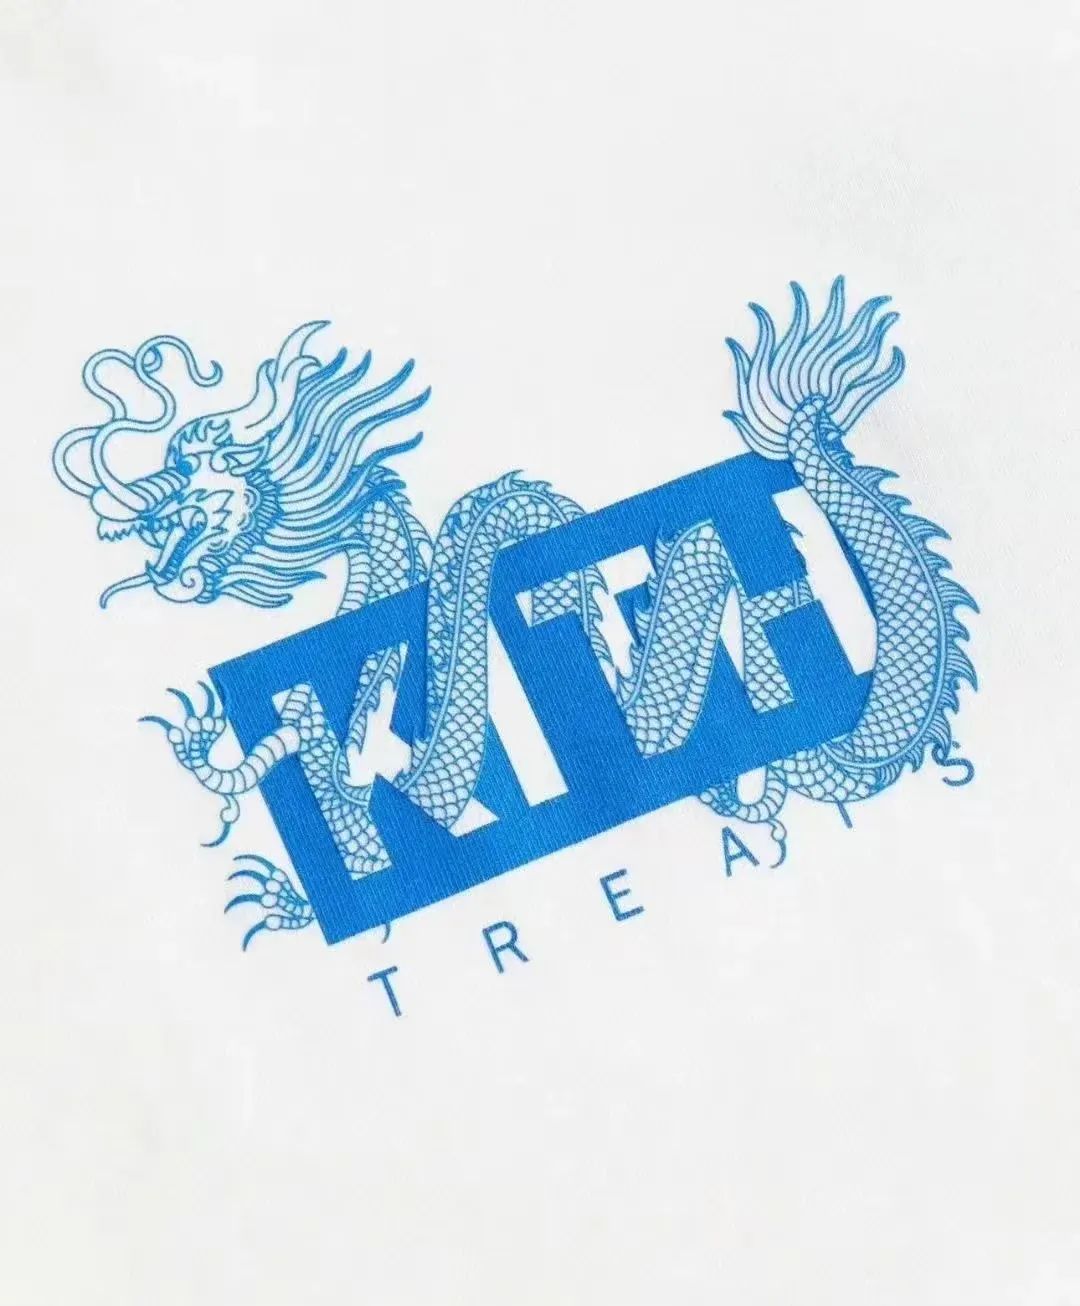 盘龙Box Logo！「Kith」龙年限定系列大曝光，明天正式发售！